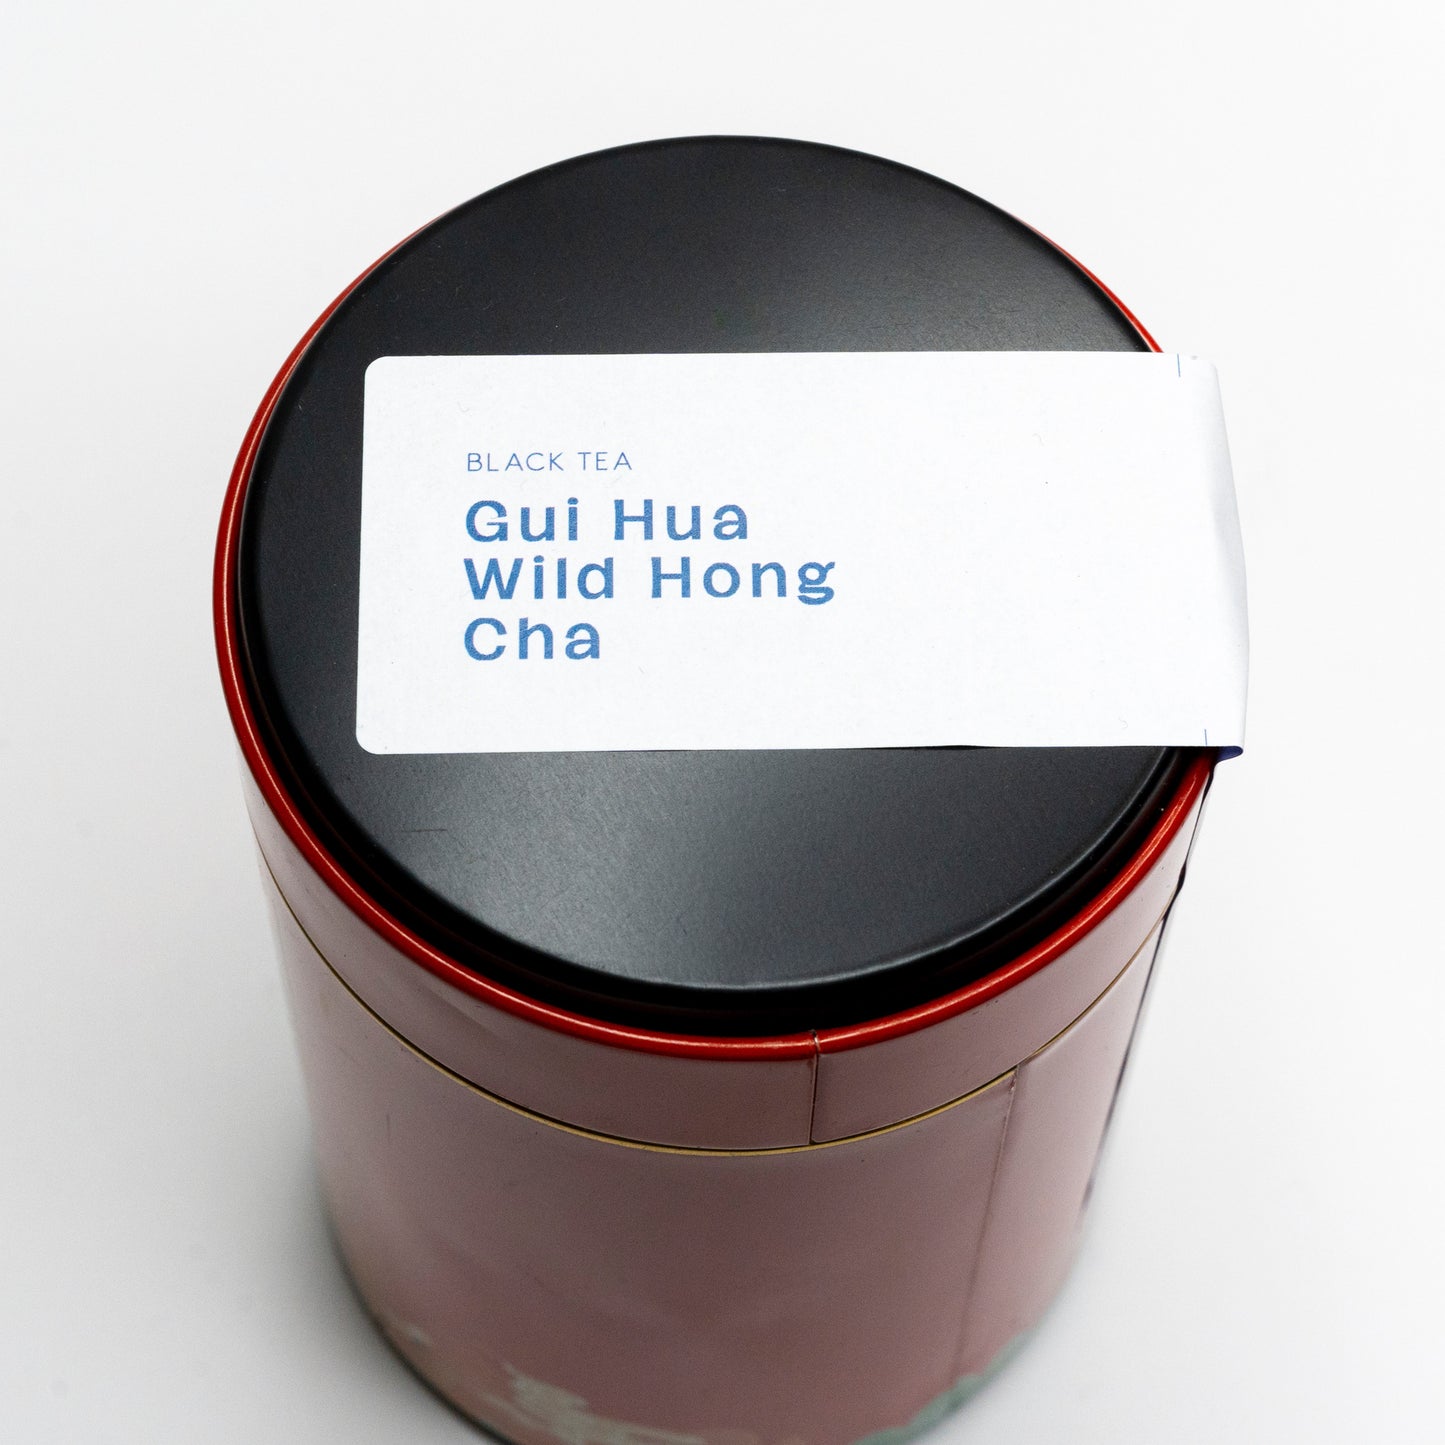 Gui Hua Wild Hong Cha